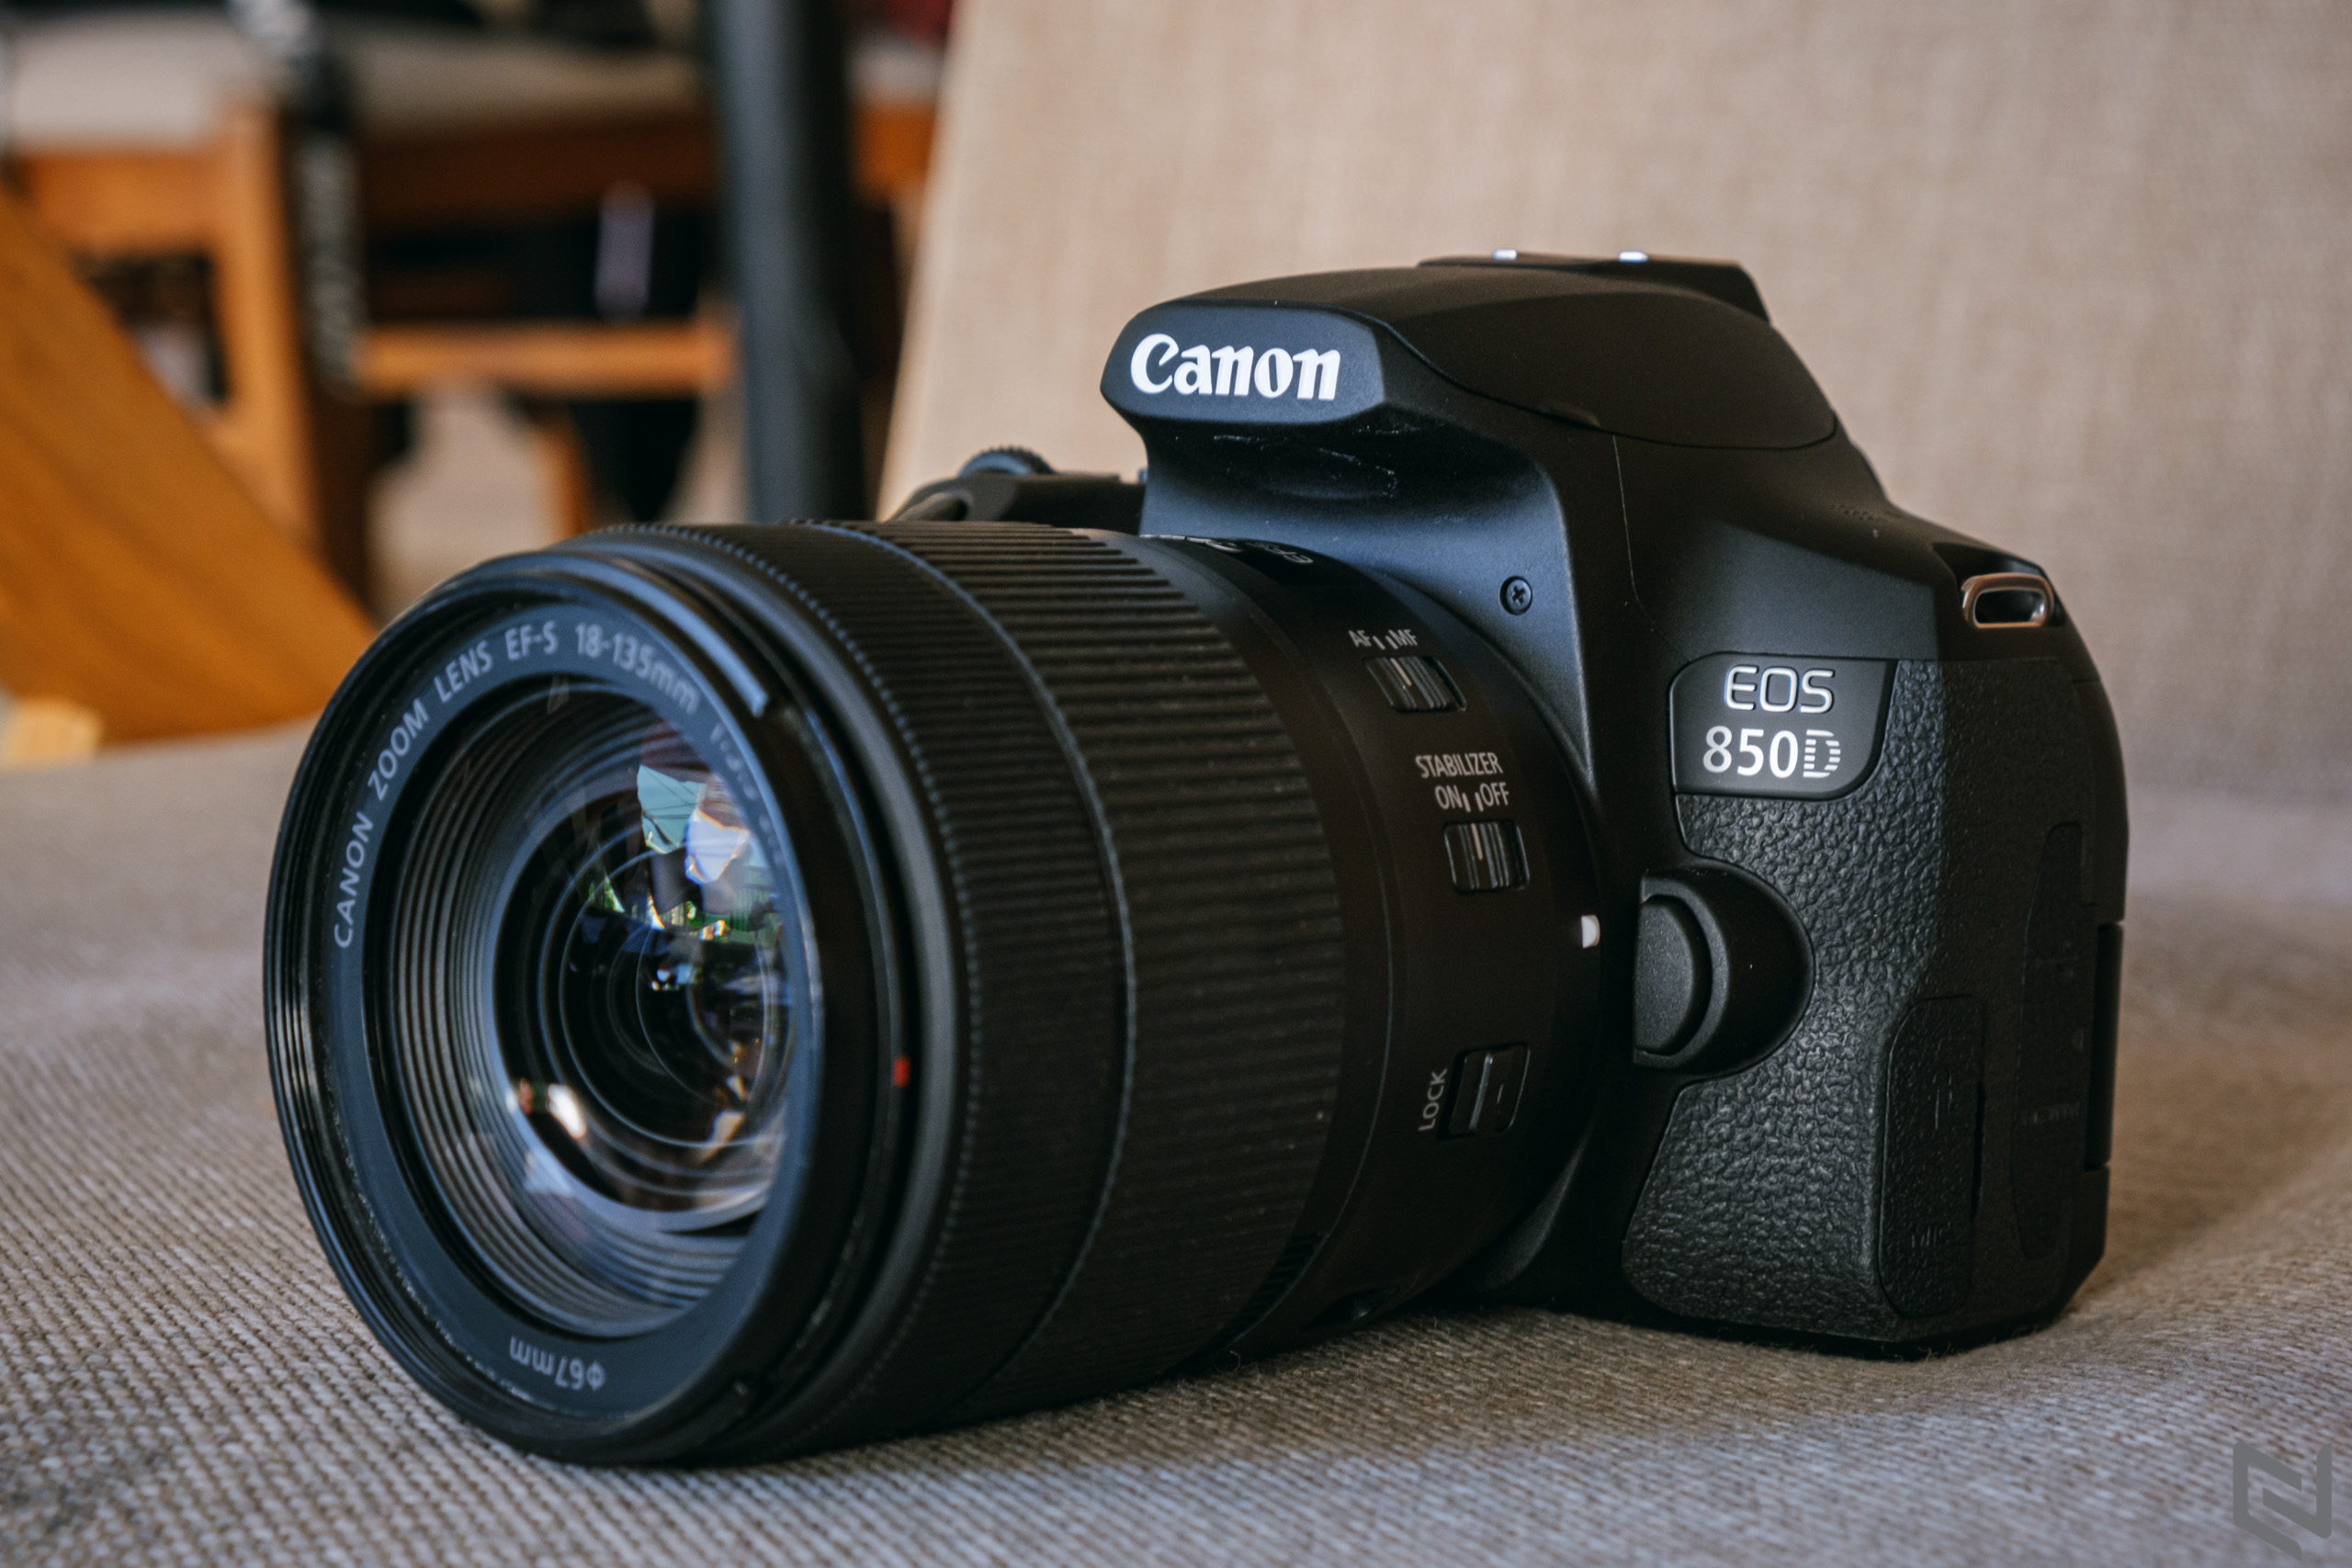 Canon ra mắt EOS 850D tại Việt Nam, máy ảnh DSLR dòng bán chuyên mới nhất của Canon, nhỏ gọn, hợp túi tiền mà tính năng khủng